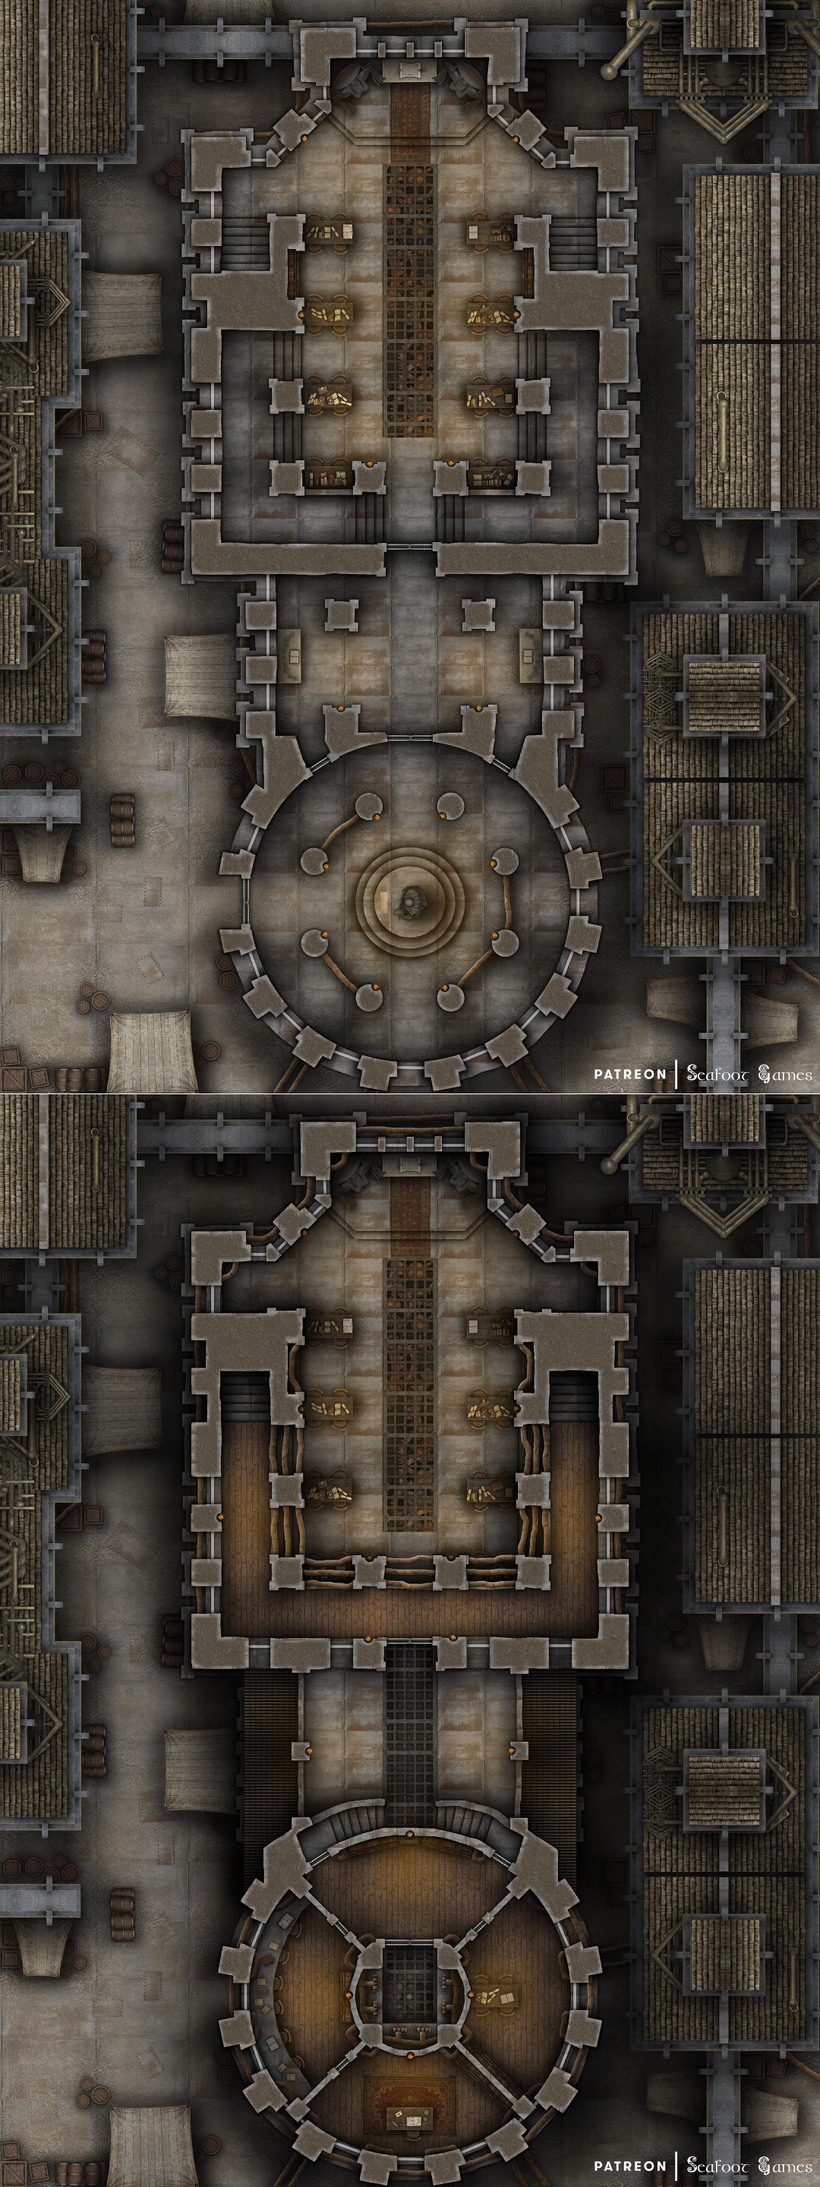 Free TTRPG map the Mechanist’s Guild of Aeraveska